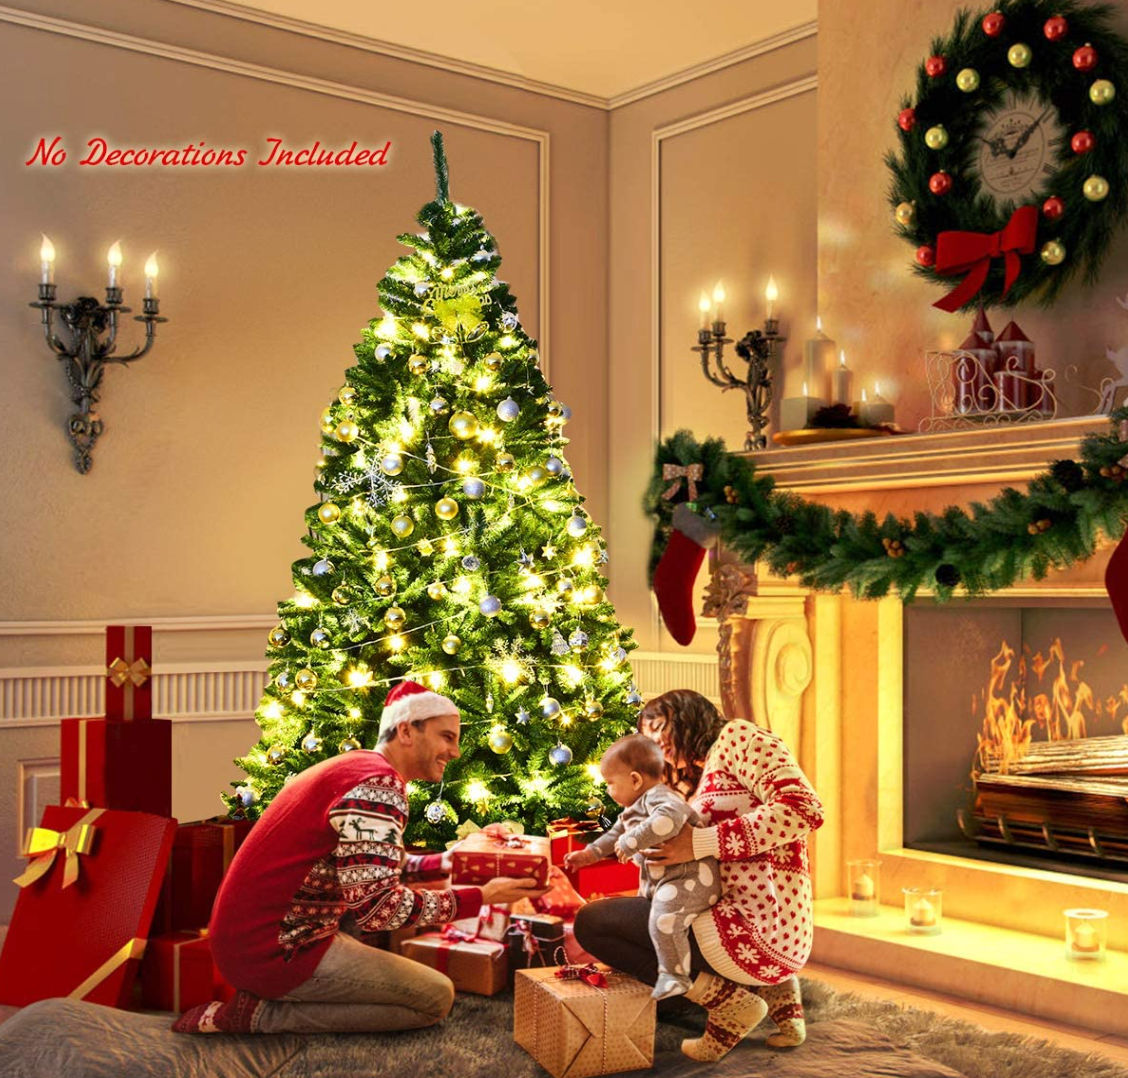 Christmas Tree Press profile homify Landelijke woonkamers kerstboom, kerst versiering, Decoratie, Interieur ontwerp, Kerst ornament, kerst decoratie, Ornament, Kerstmis, Houtachtige plant, Rood